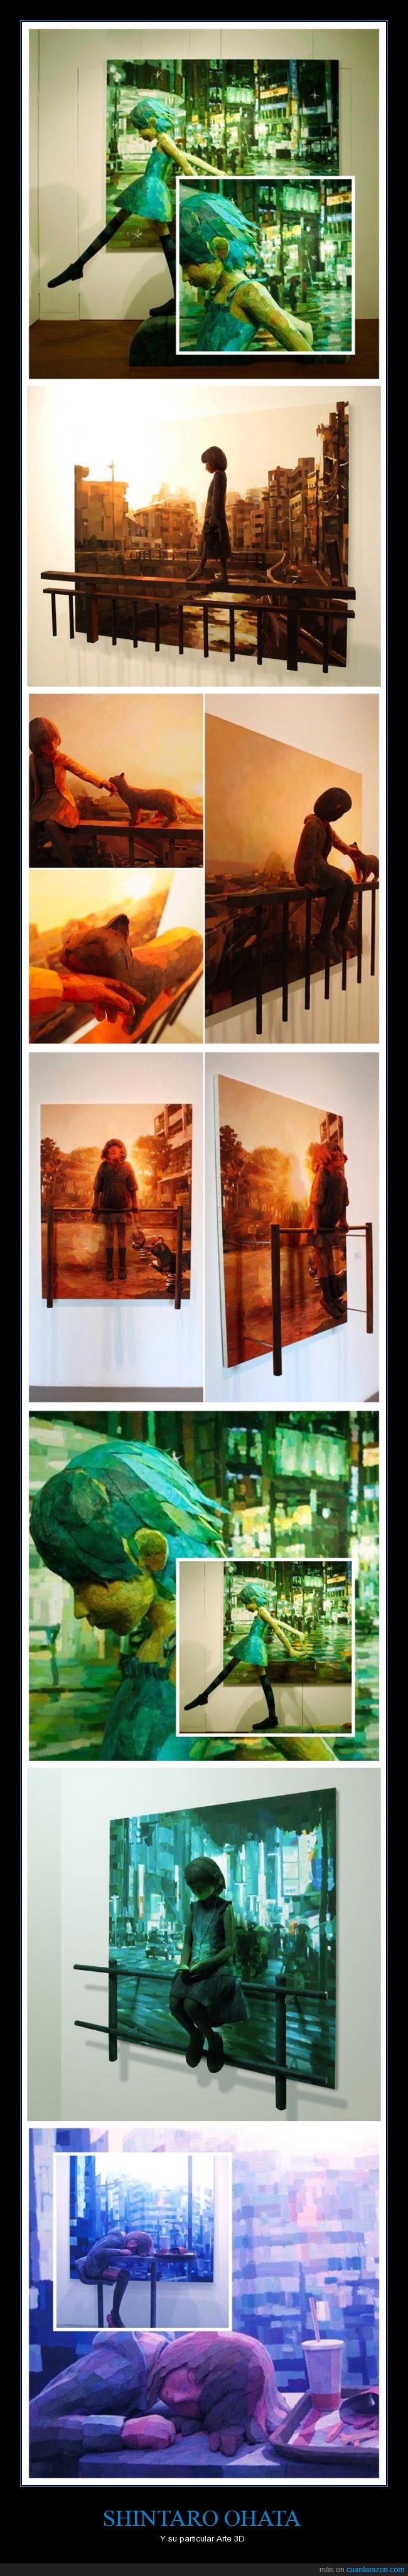 Shintaro Ohata,arte,3d,cuadro,figura,museo,exposición